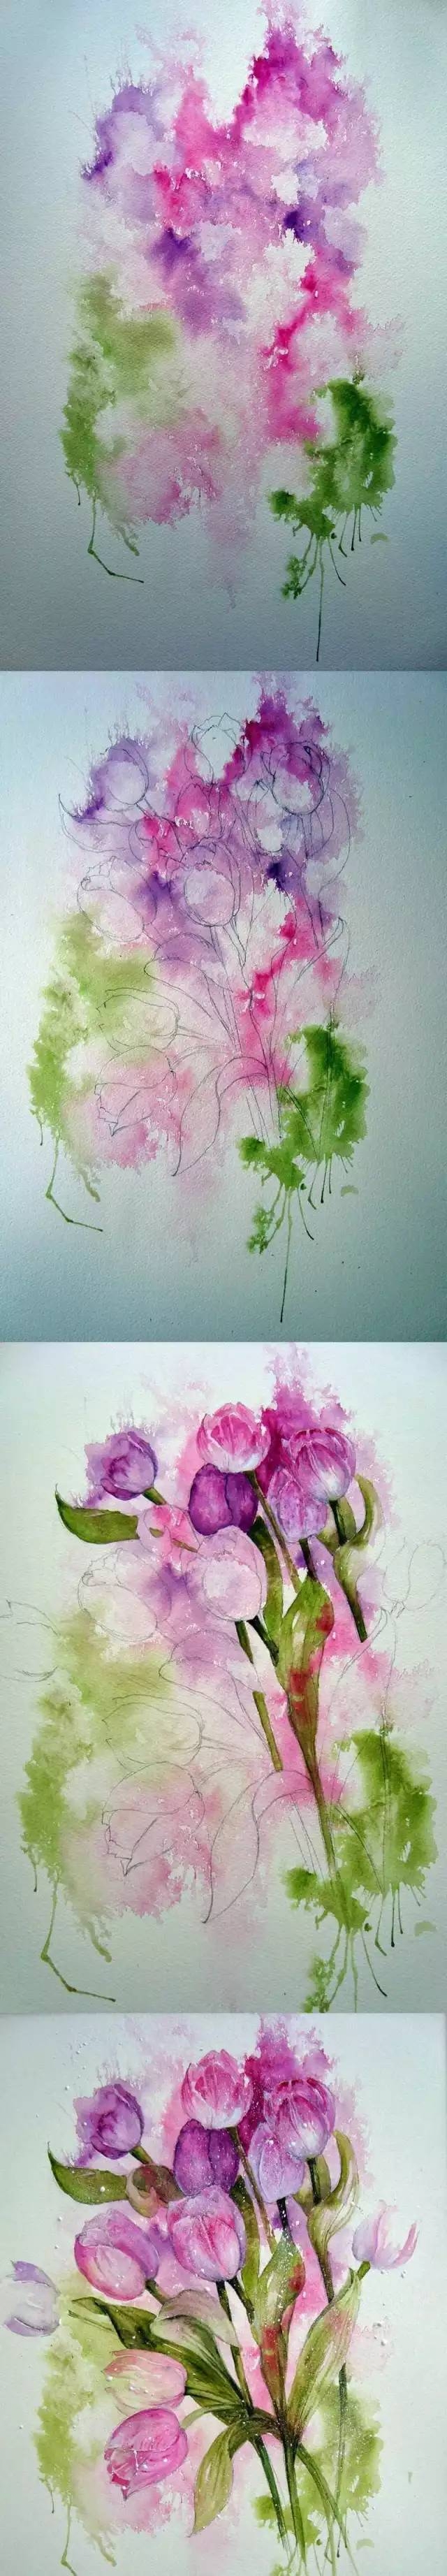 英国艺术家Yvonne Harry水彩花卉教程